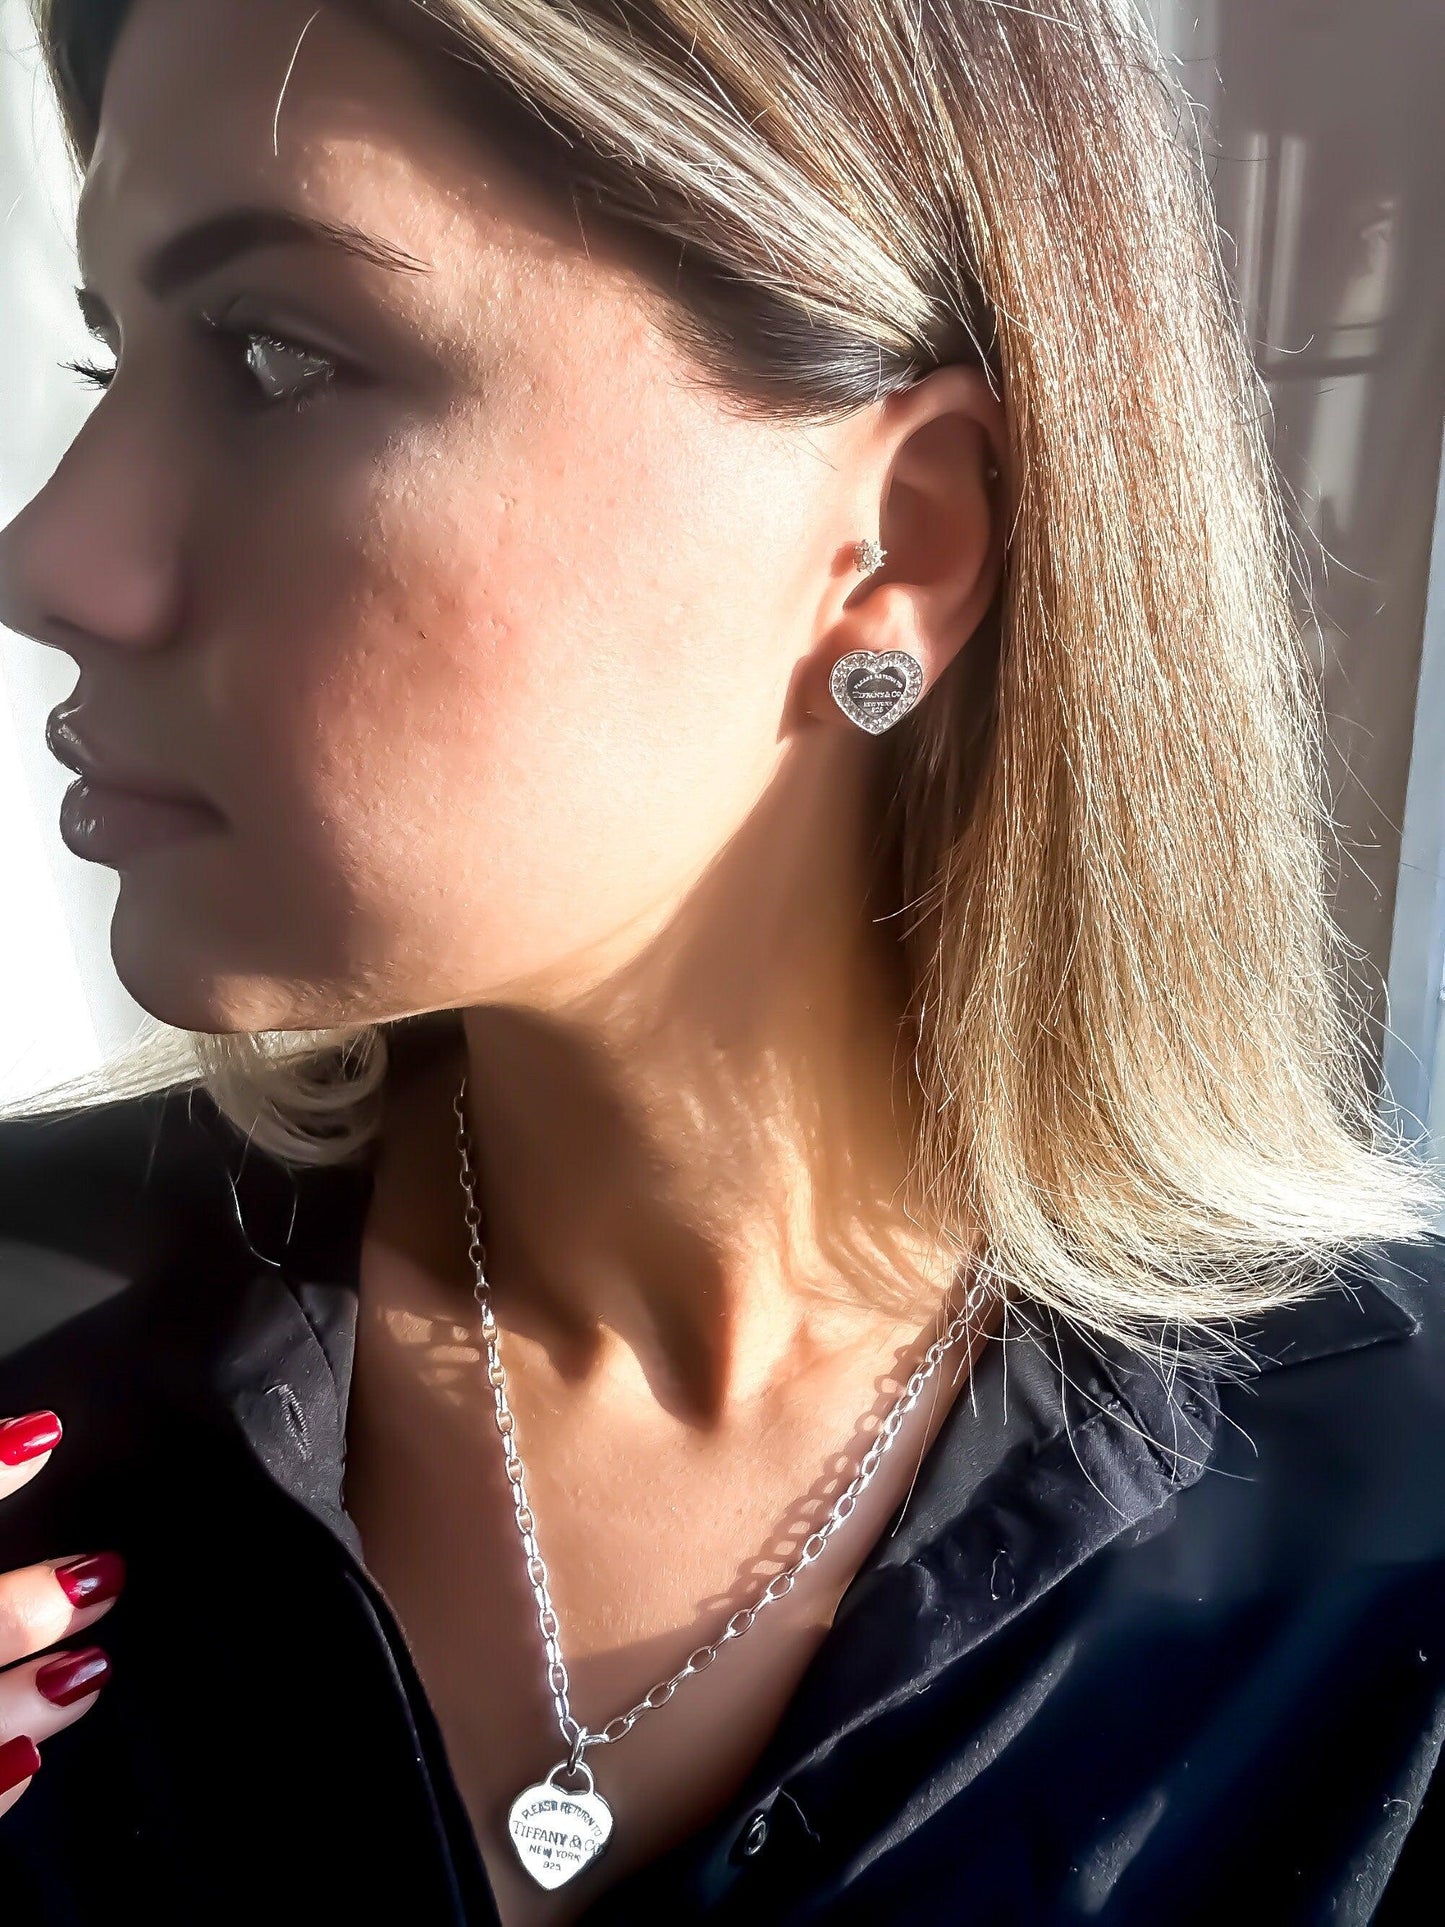 Tiffany&Co Luxury jewelry 925 sterling silver earrings